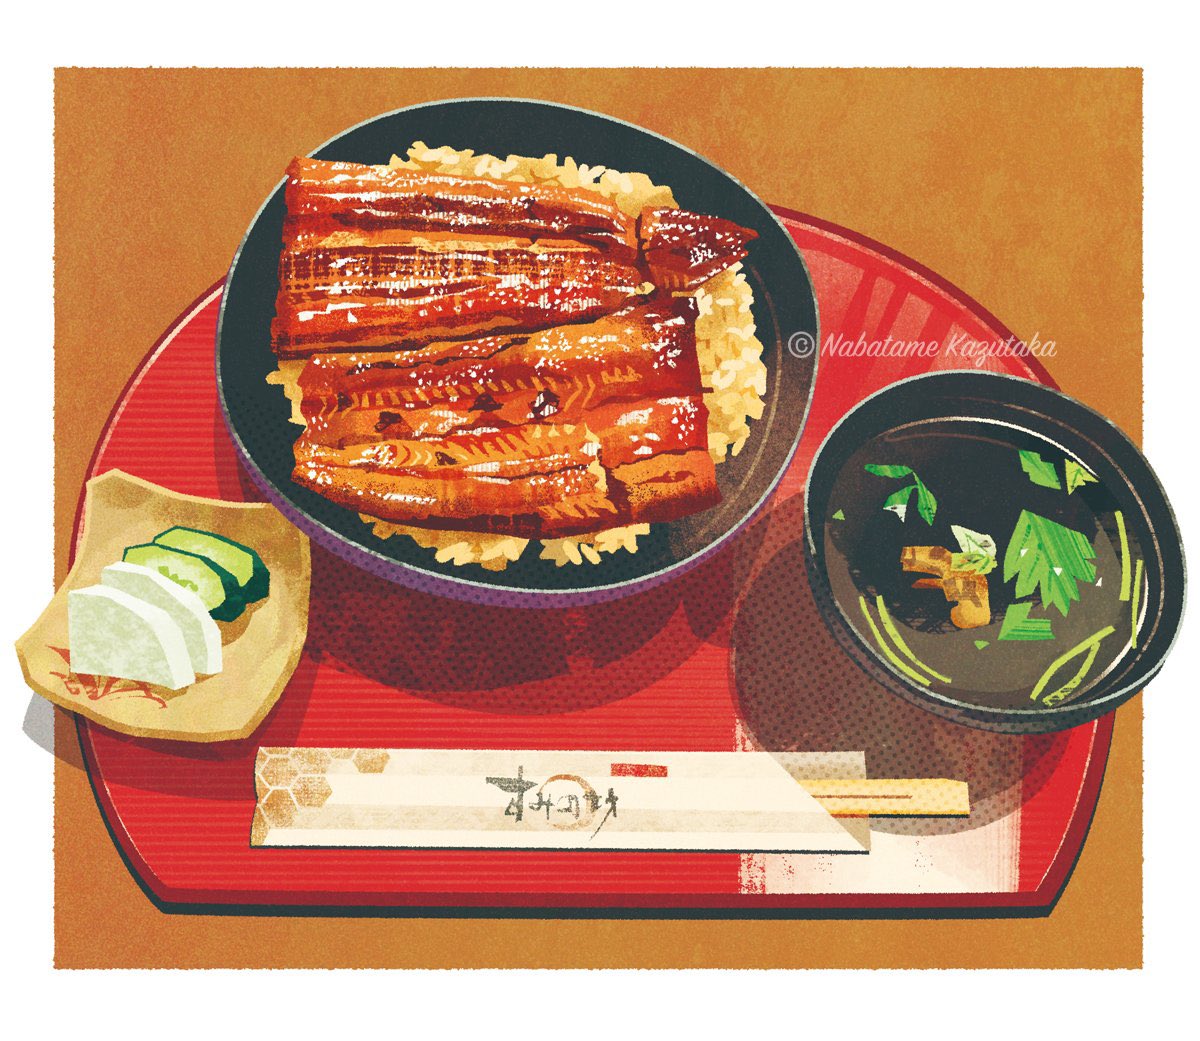 「この前描いたうな丼です。三島大社前の「すみの坊」で頂きました。美味しゅうございま」|生田目 和剛 (ナバタメ・カズタカ)のイラスト